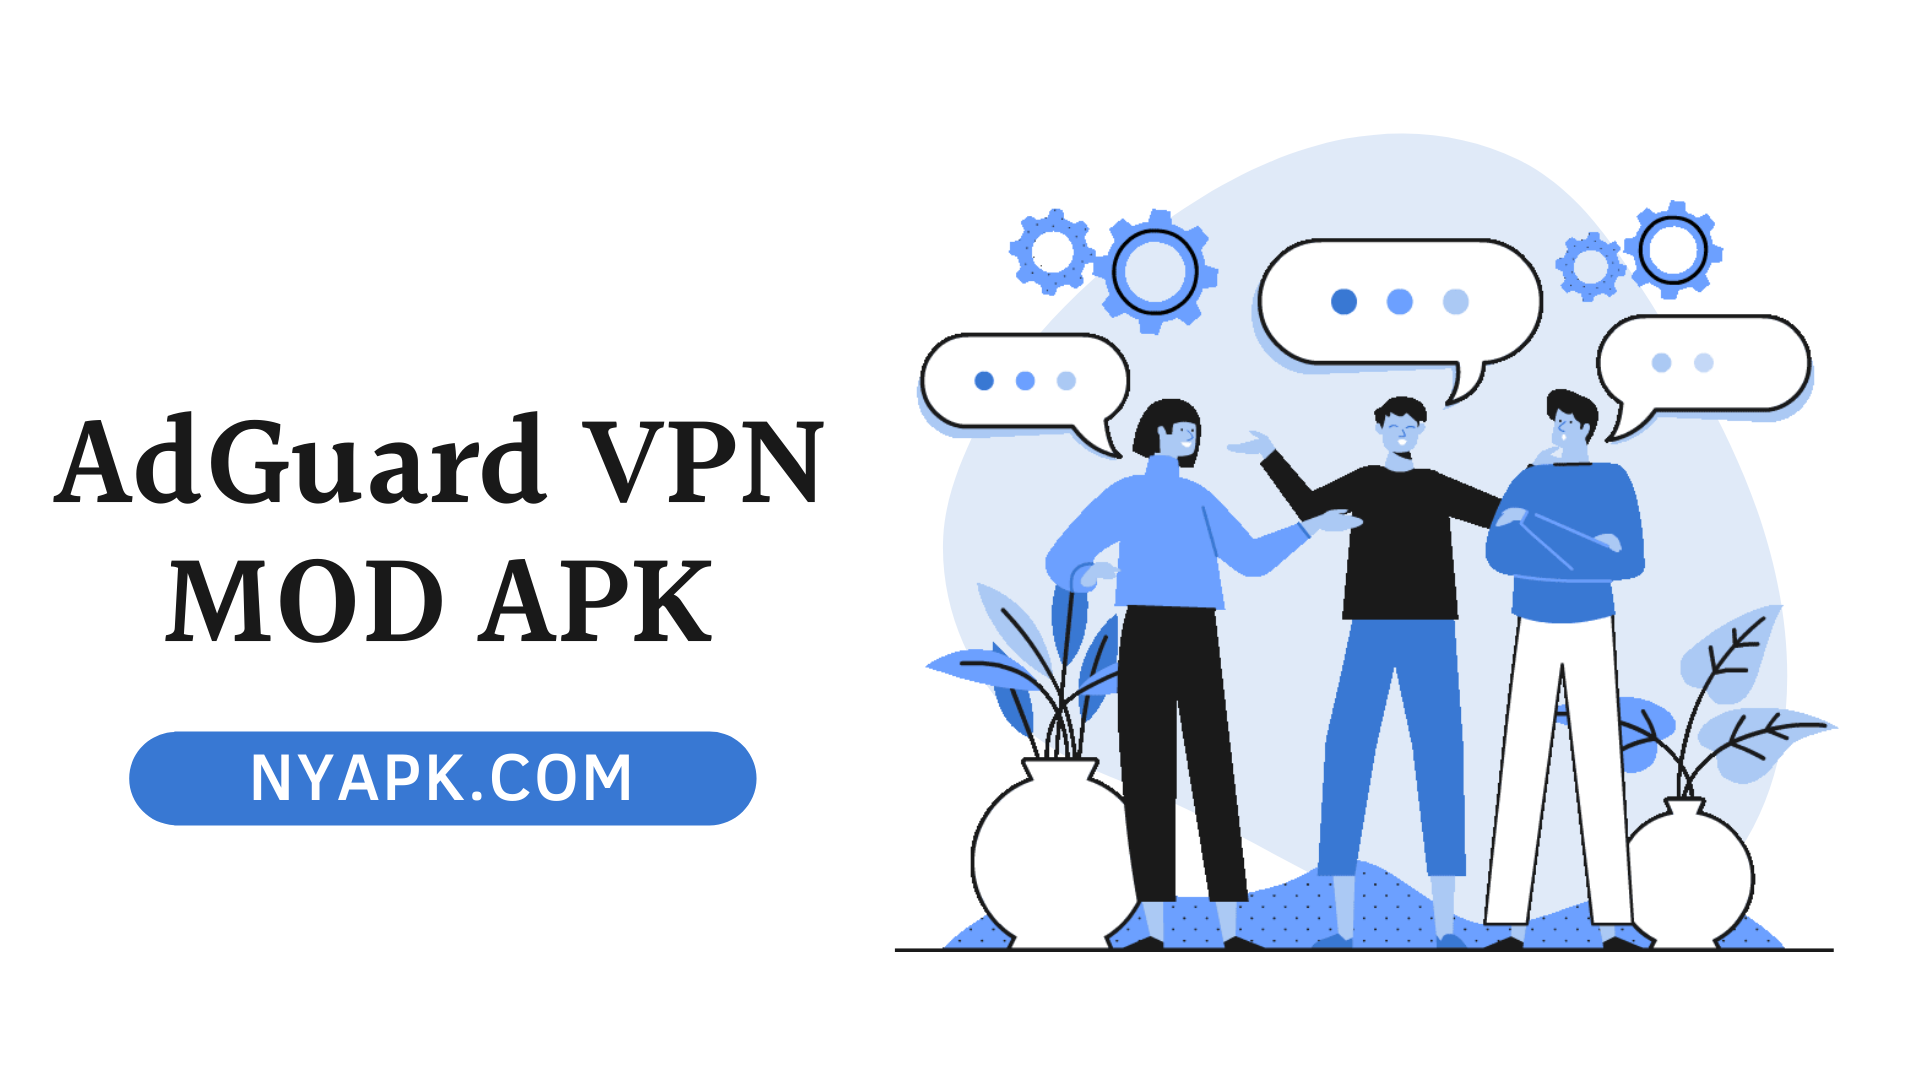 AdGuard VPN MOD APK